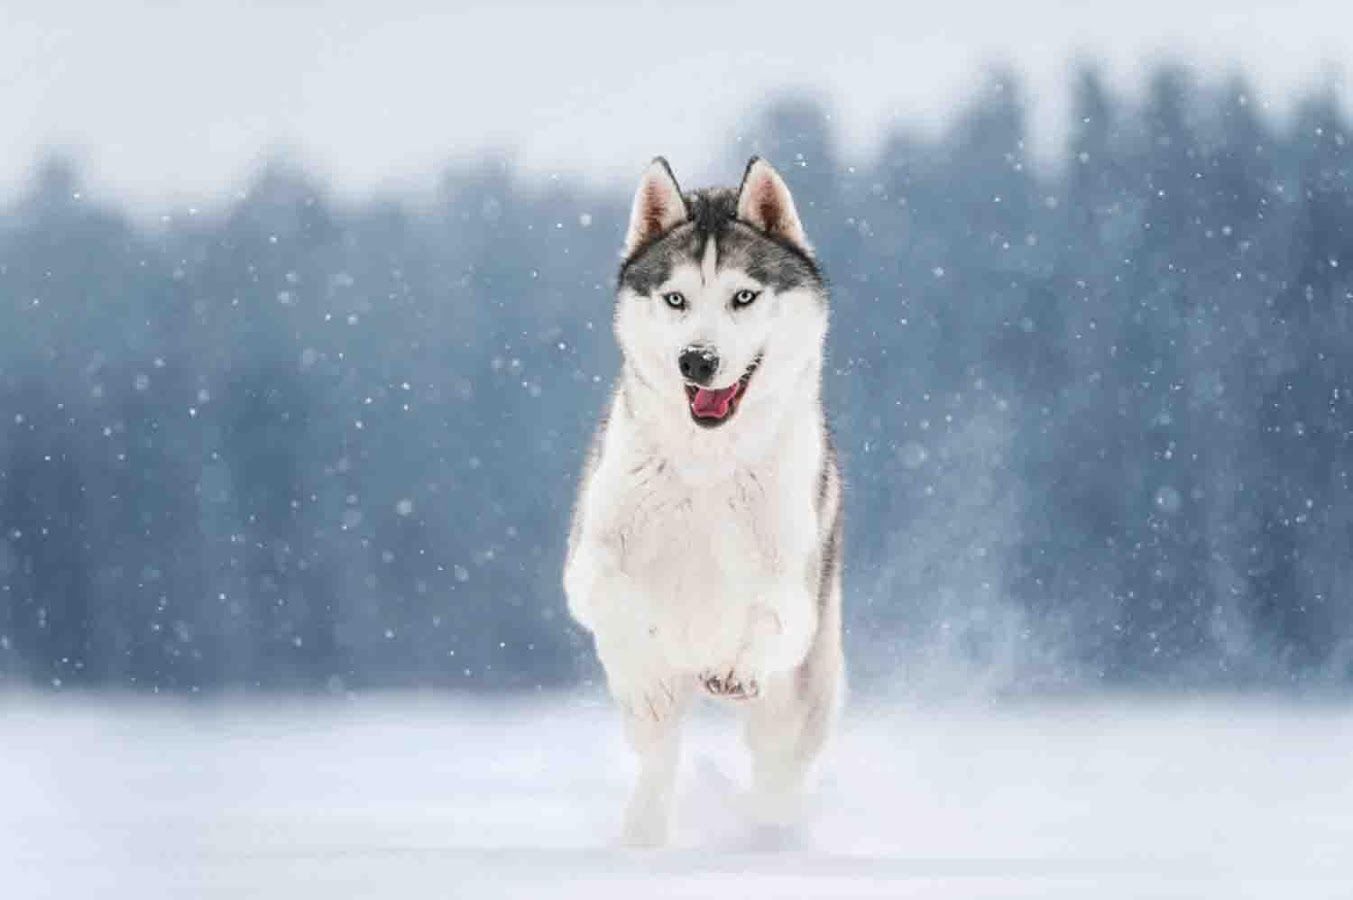  تصویر جذاب و قشنگ از سگ هاسکی پشمالو درحال دویدن در برف 